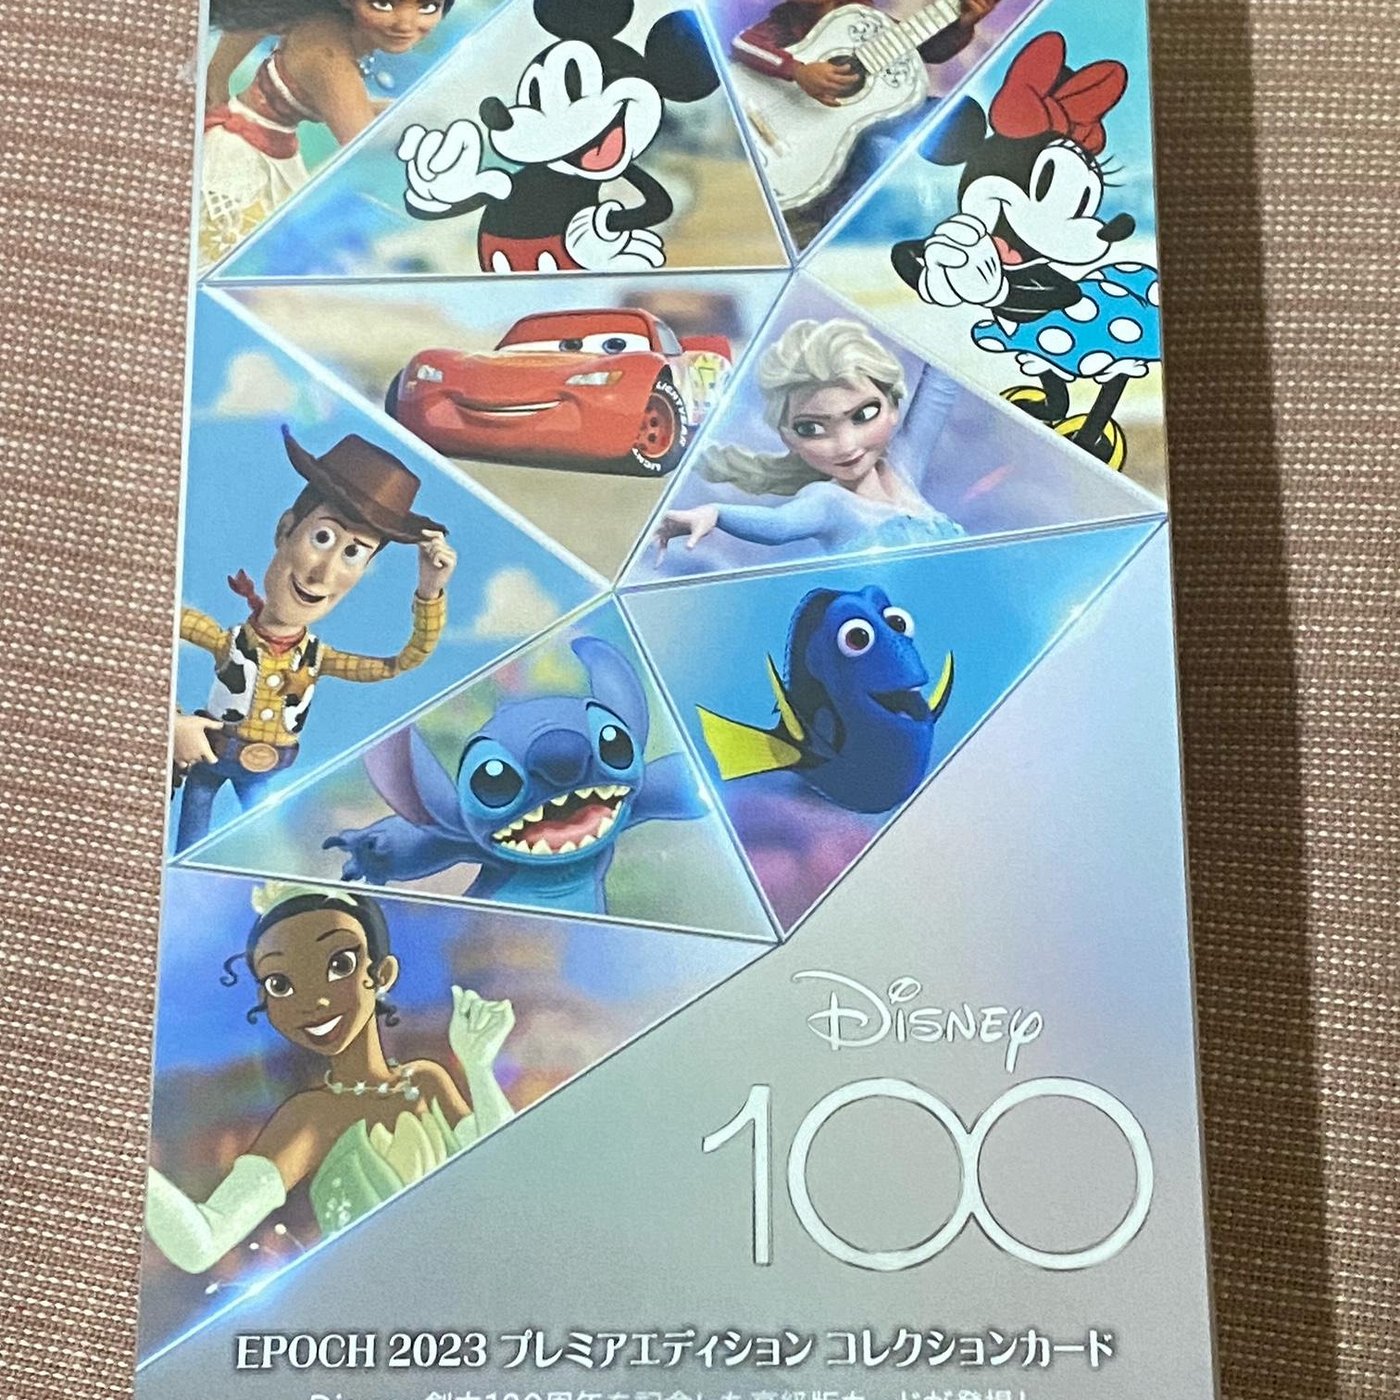 ディズニー100周年エポック-